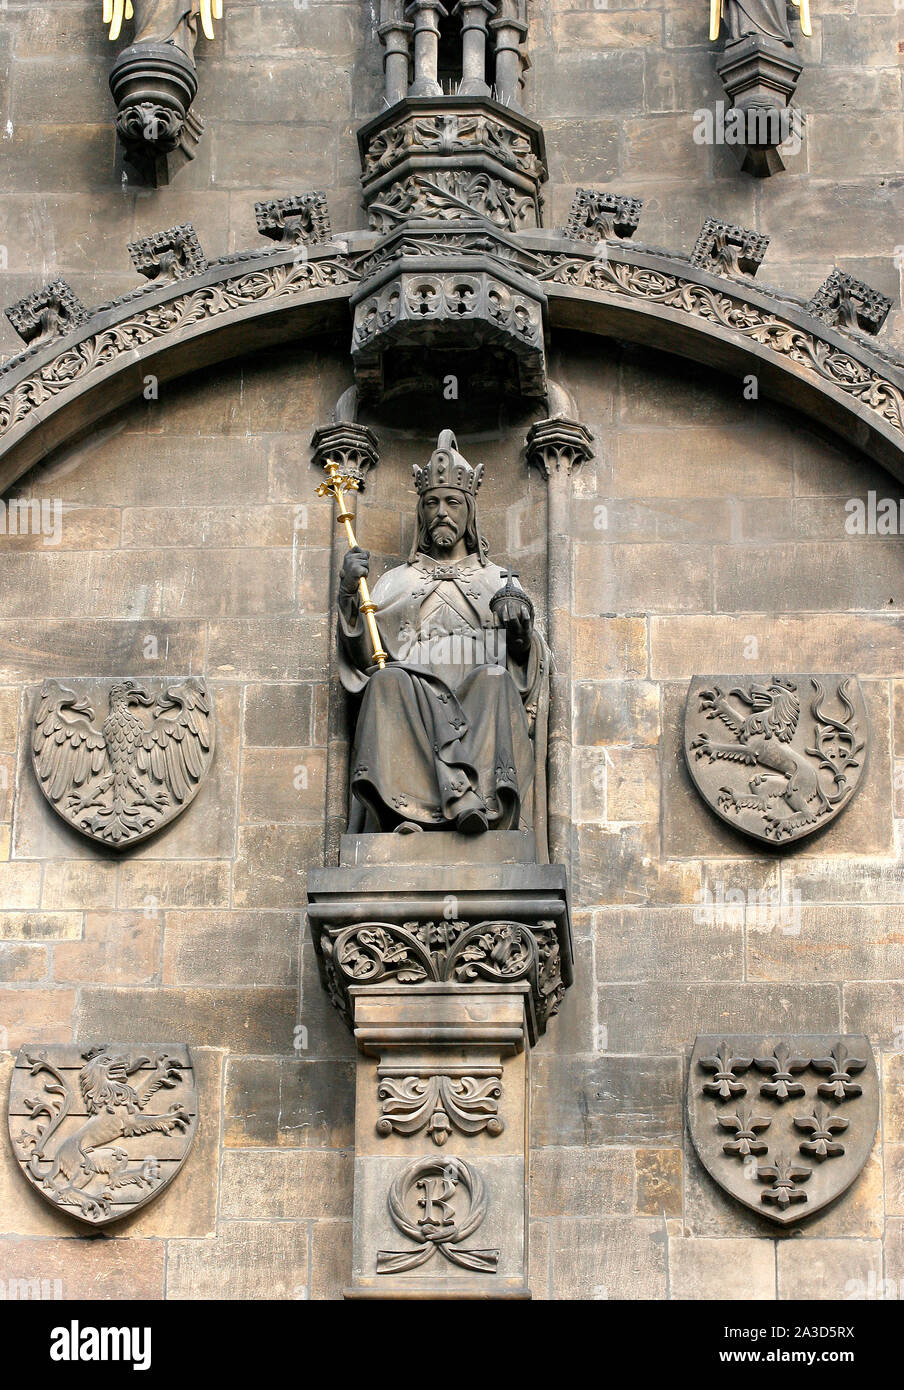 Saint Empereur Romain Charles IV (1316-1378). Statue sur la Tour Poudrière. Prague, République tchèque. Banque D'Images